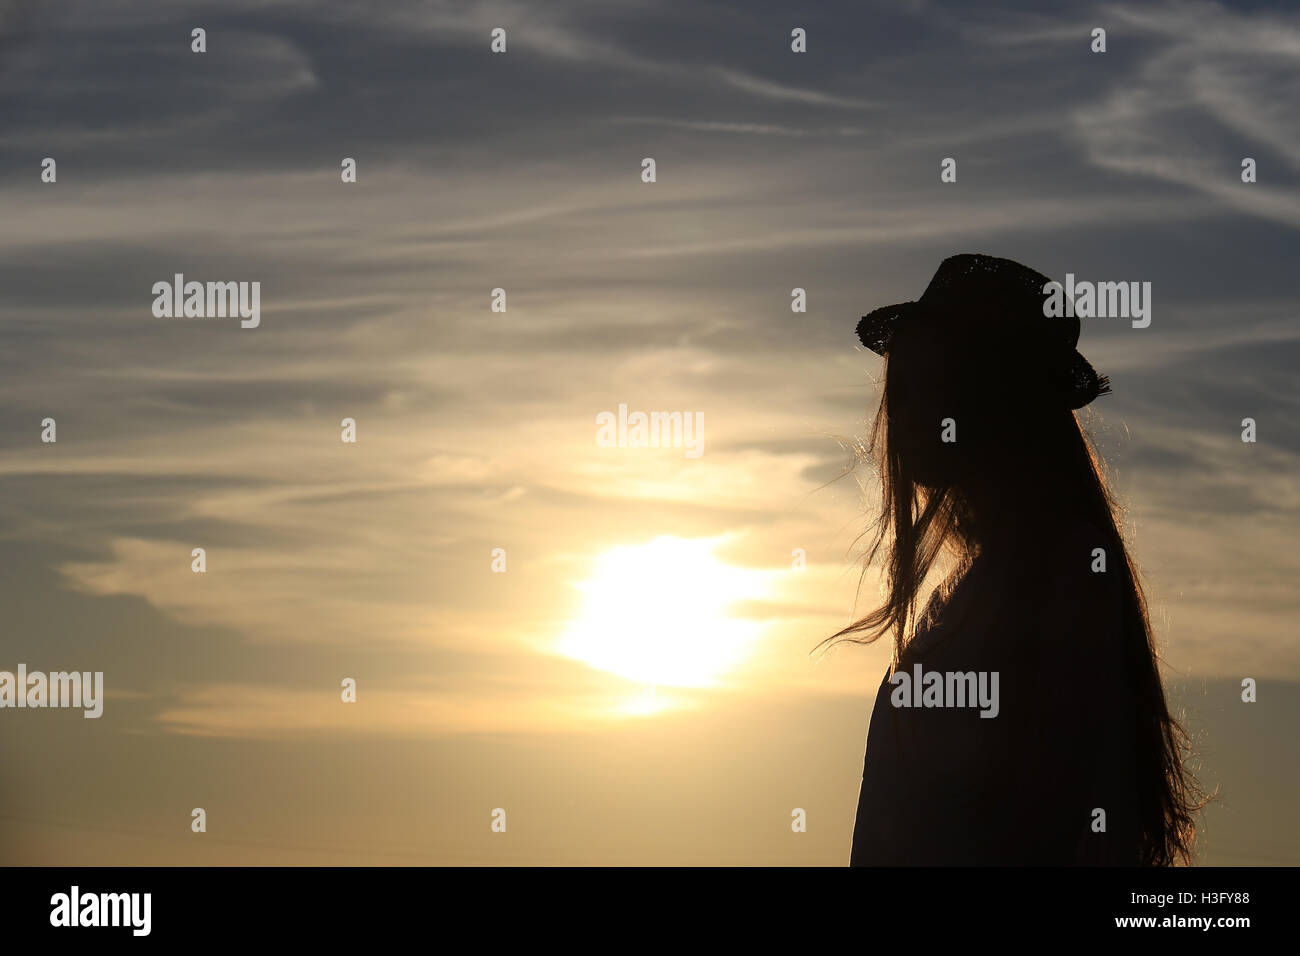 La silhouette d'une fille contre le soleil avec des cheveux d'or, elle porte un chapeau. Banque D'Images